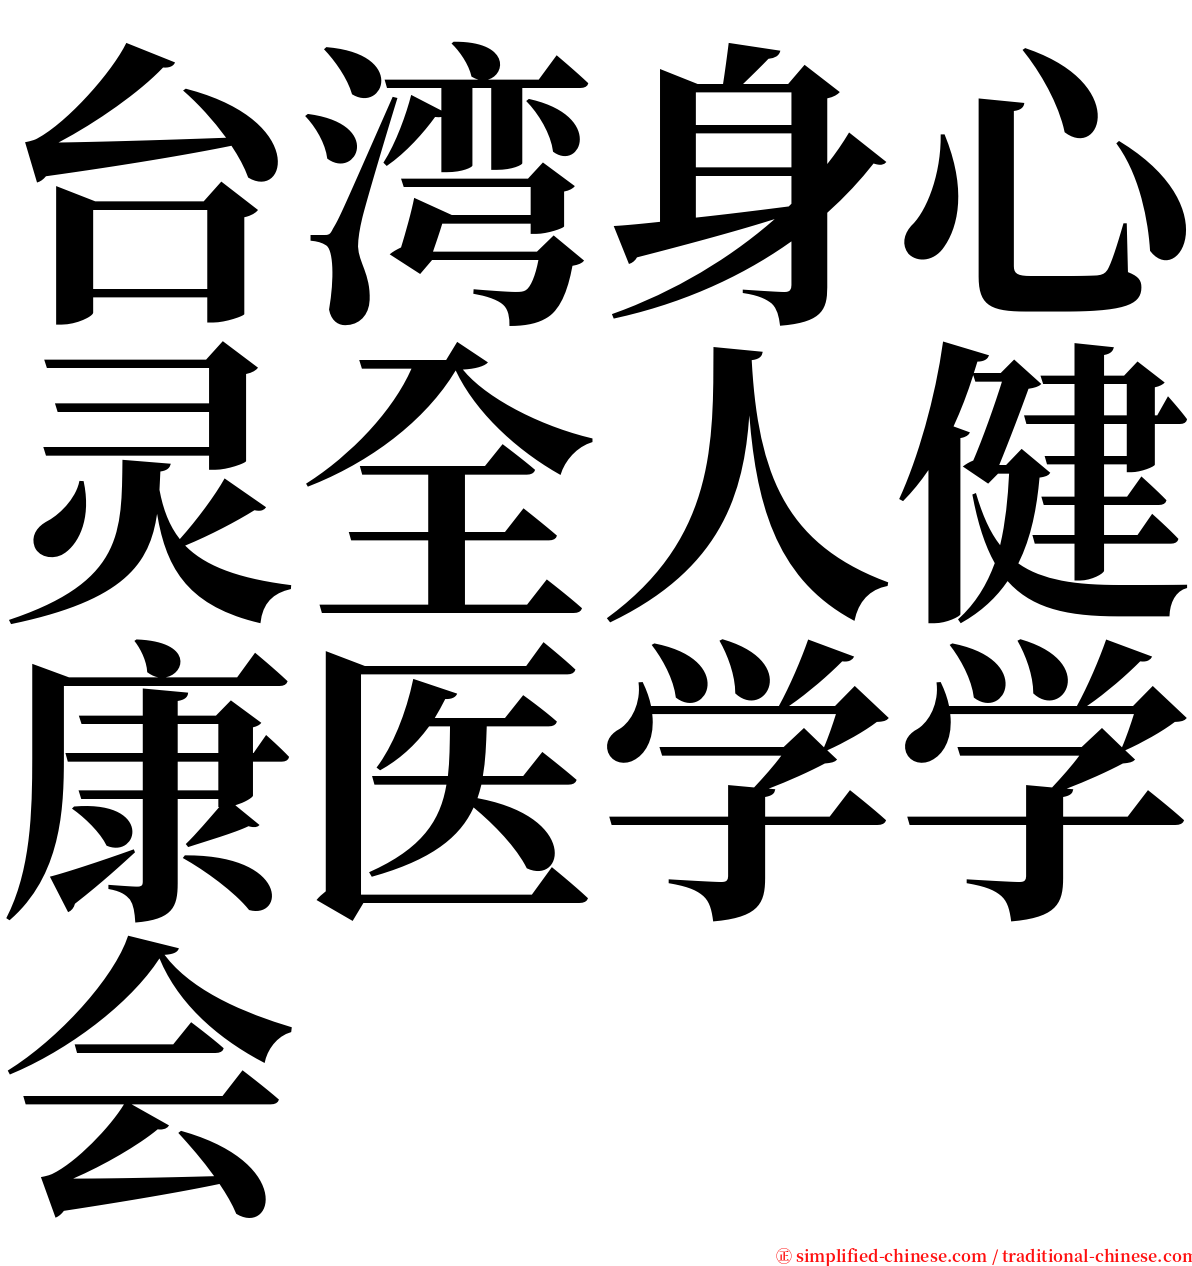 台湾身心灵全人健康医学学会 serif font